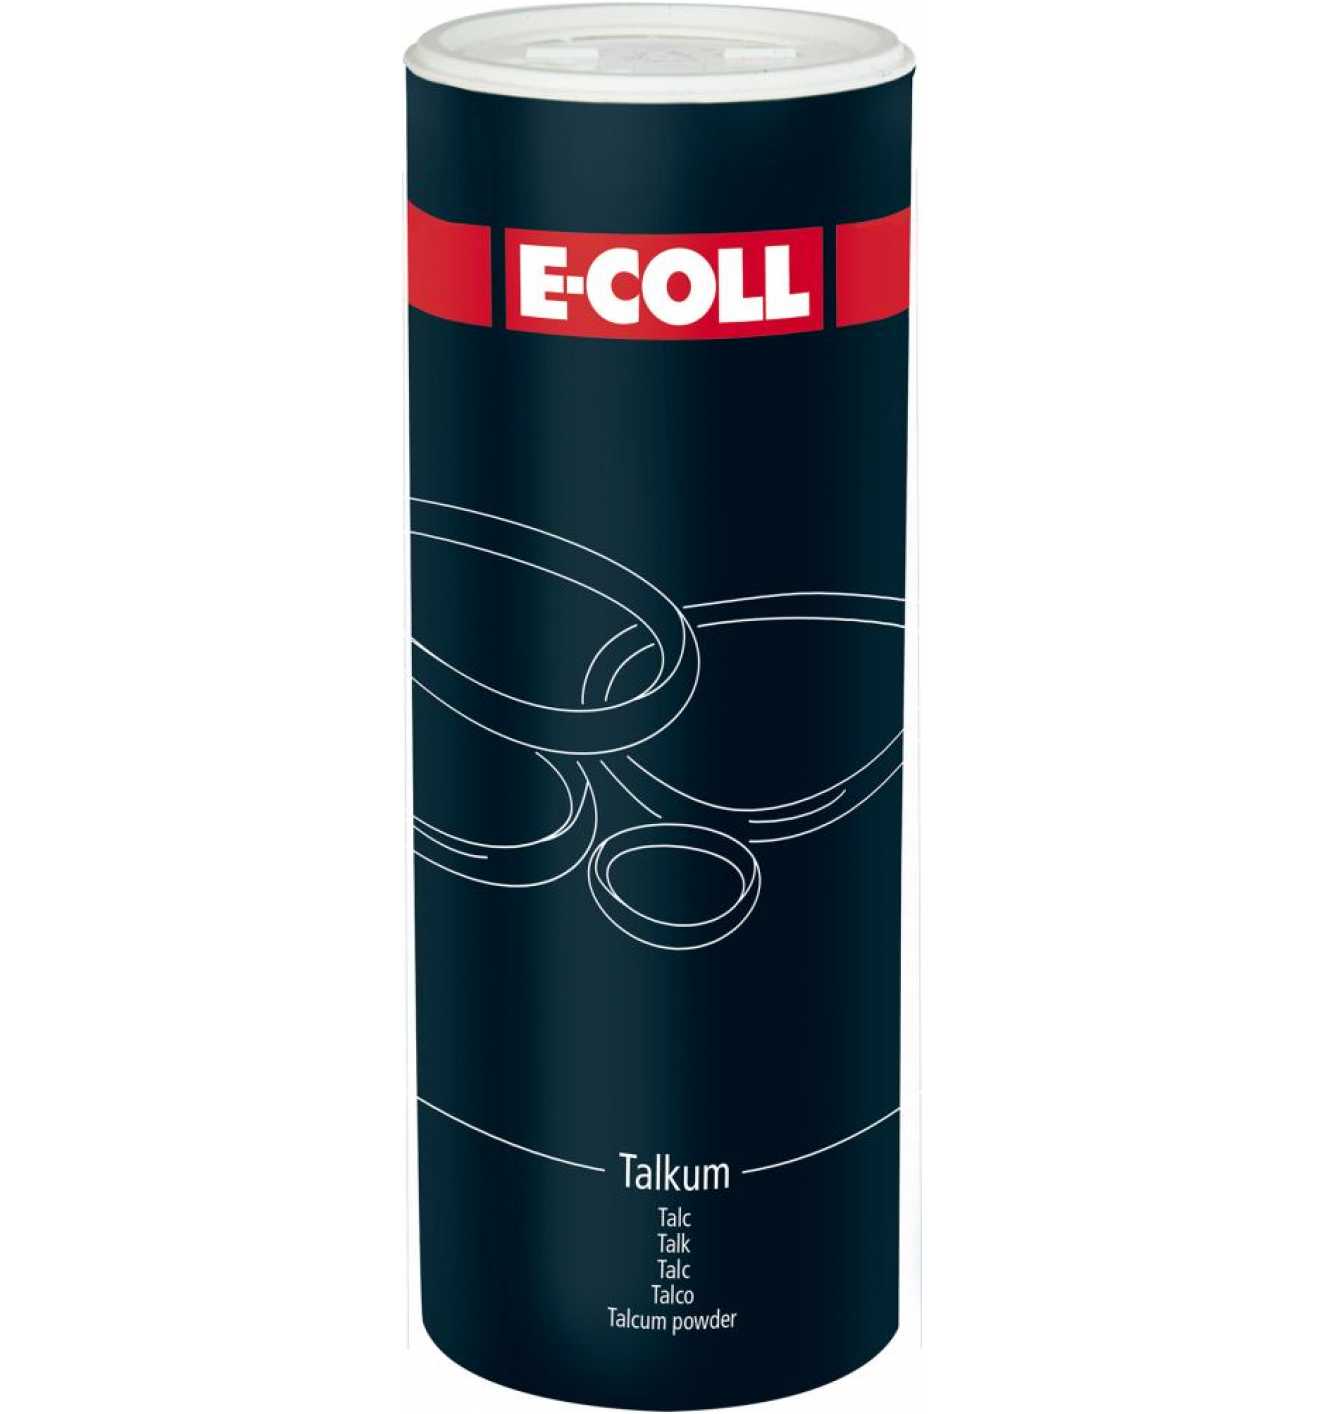 E-COLL Talkum 450 g Dose - 1